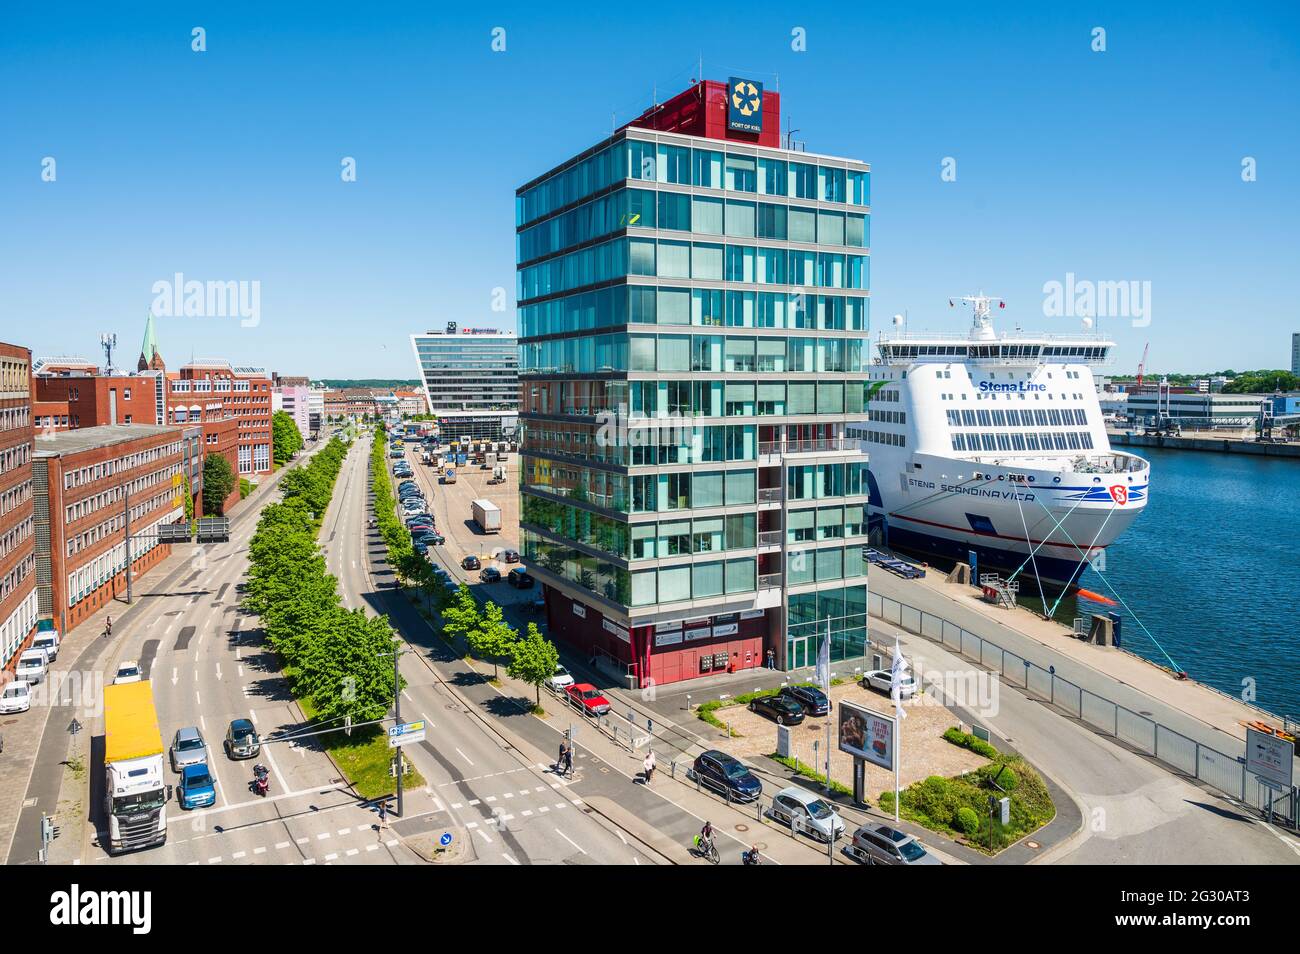 Das Gebäude der Hafenverwaltung Hafen Kiel an der Kaistraße neben dem Schwedenkai. Am Kai hat gerade die aus Göteborg kommende Stena Scandinavica fe Stockfoto